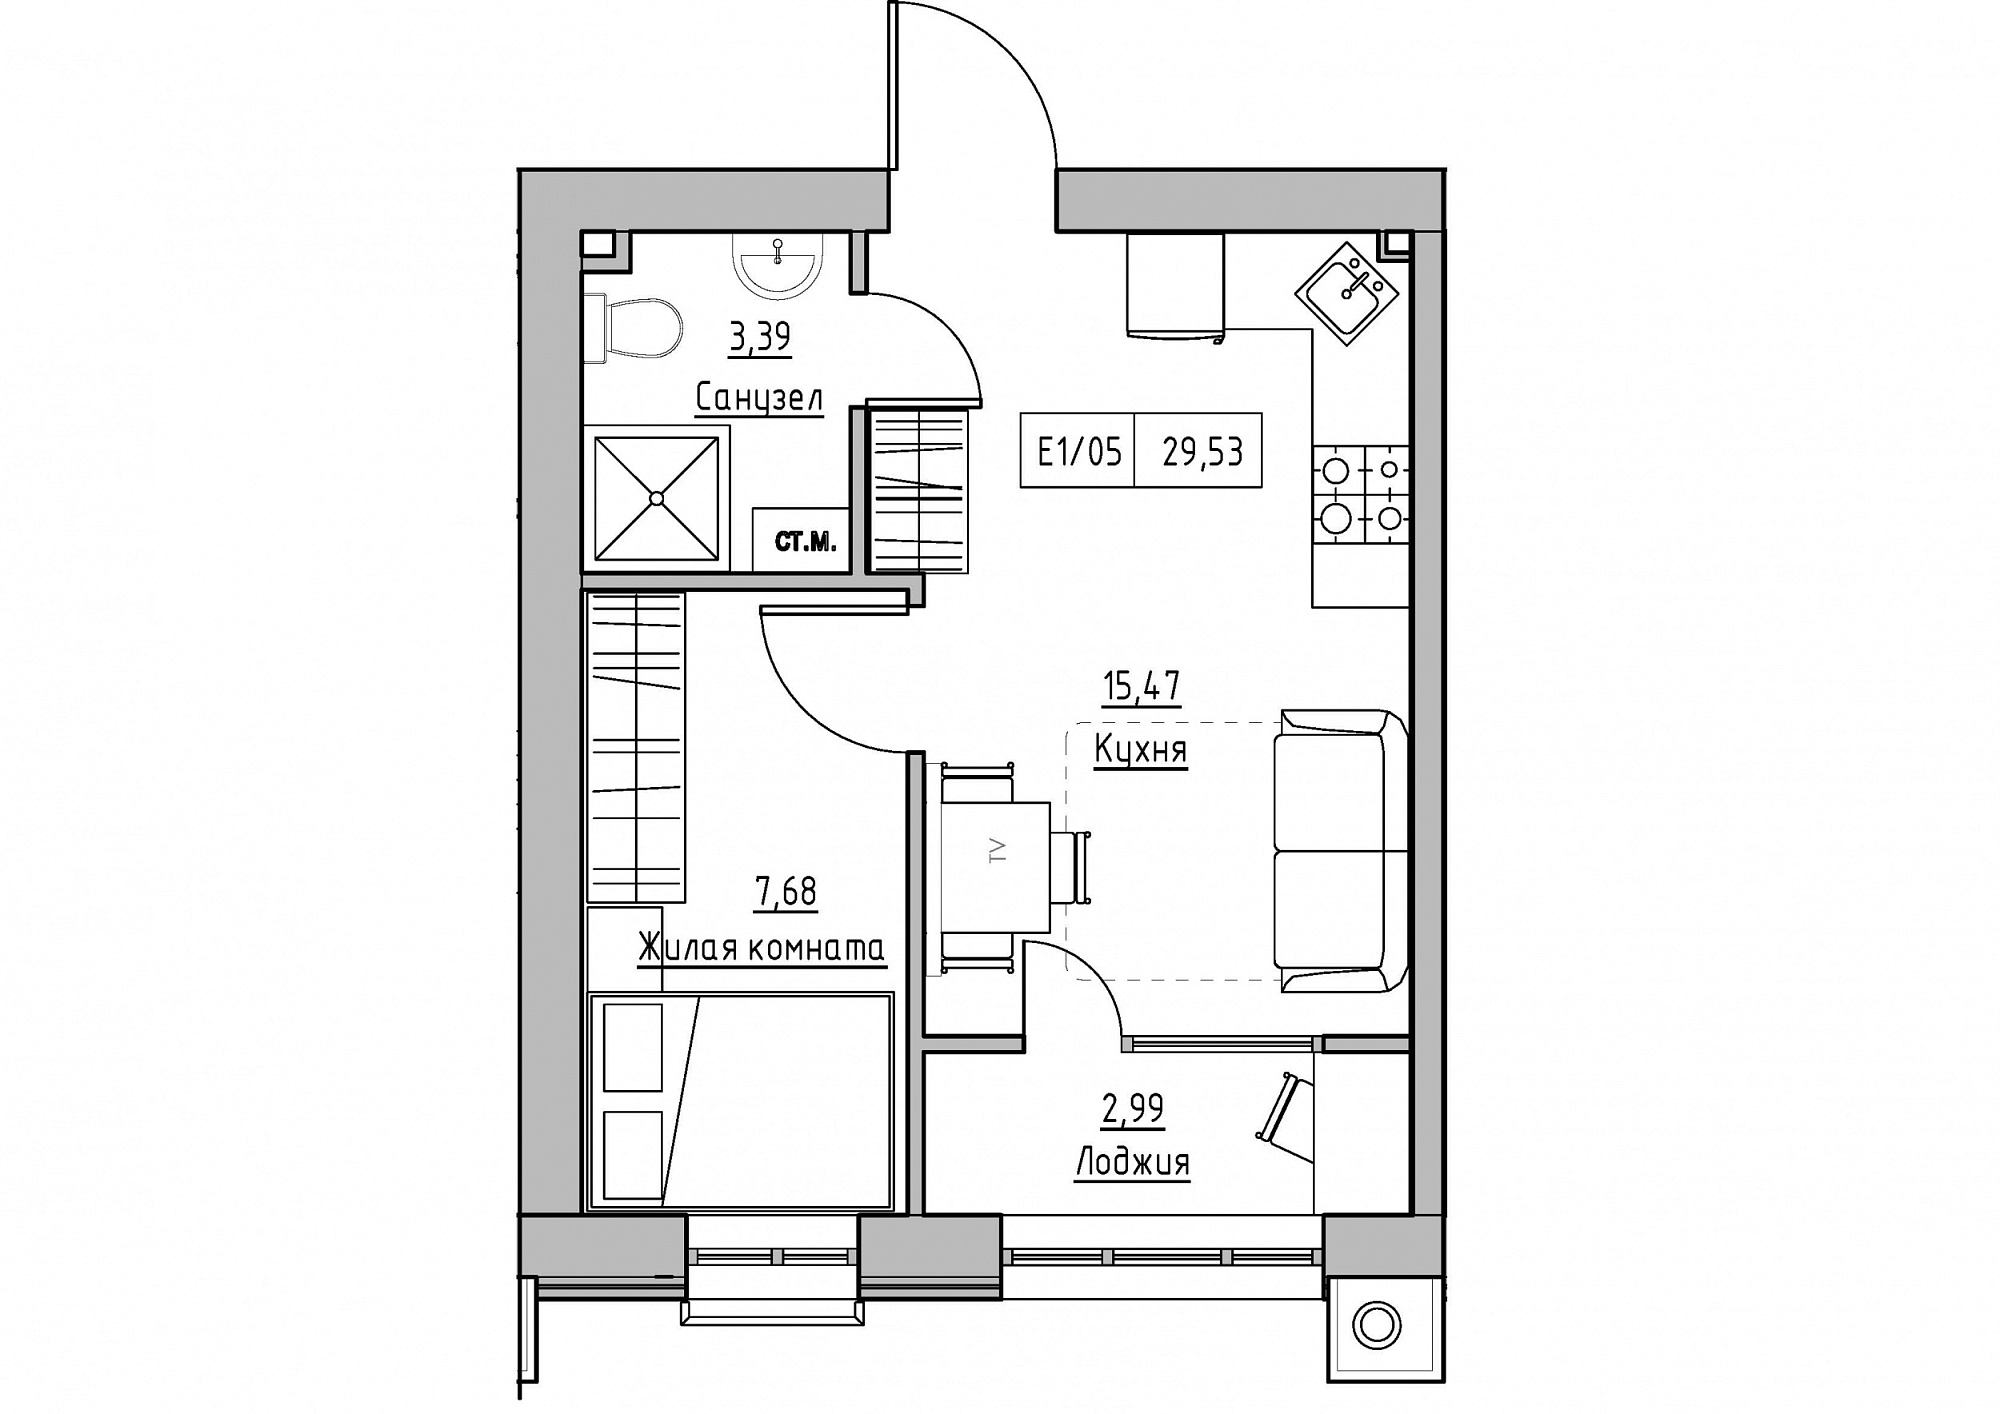 Планировка 1-к квартира площей 29.53м2, KS-011-01/0010.